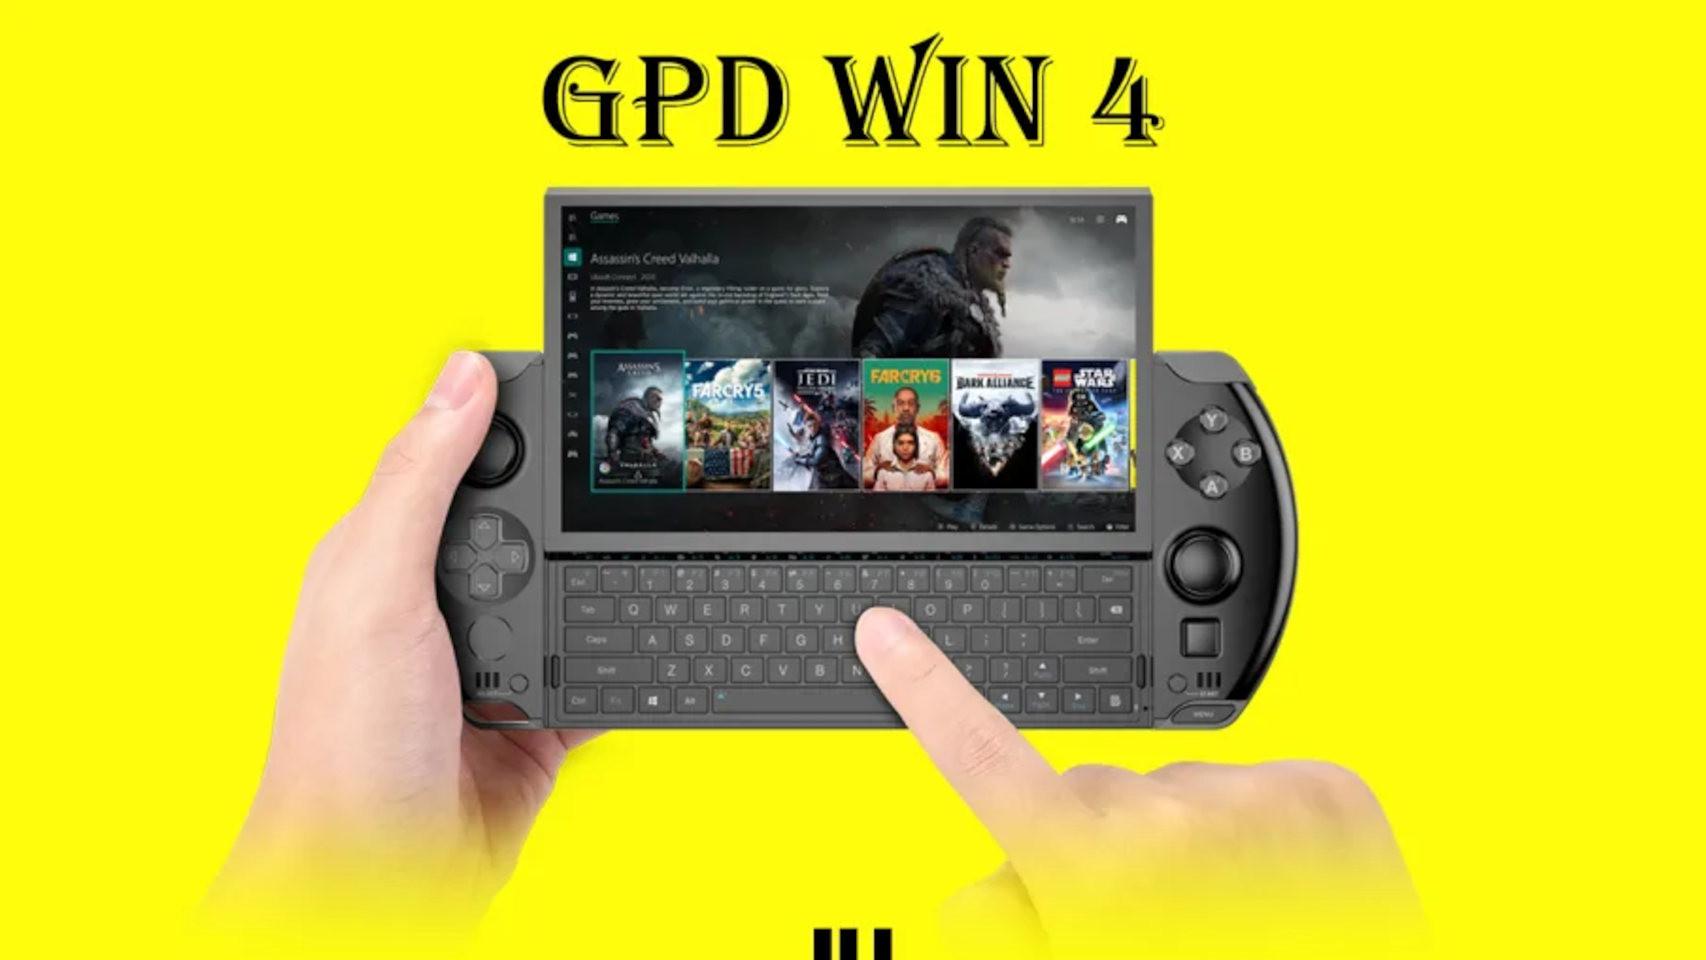 La GPD Win 4 tiene un teclado físico bajo la pantalla